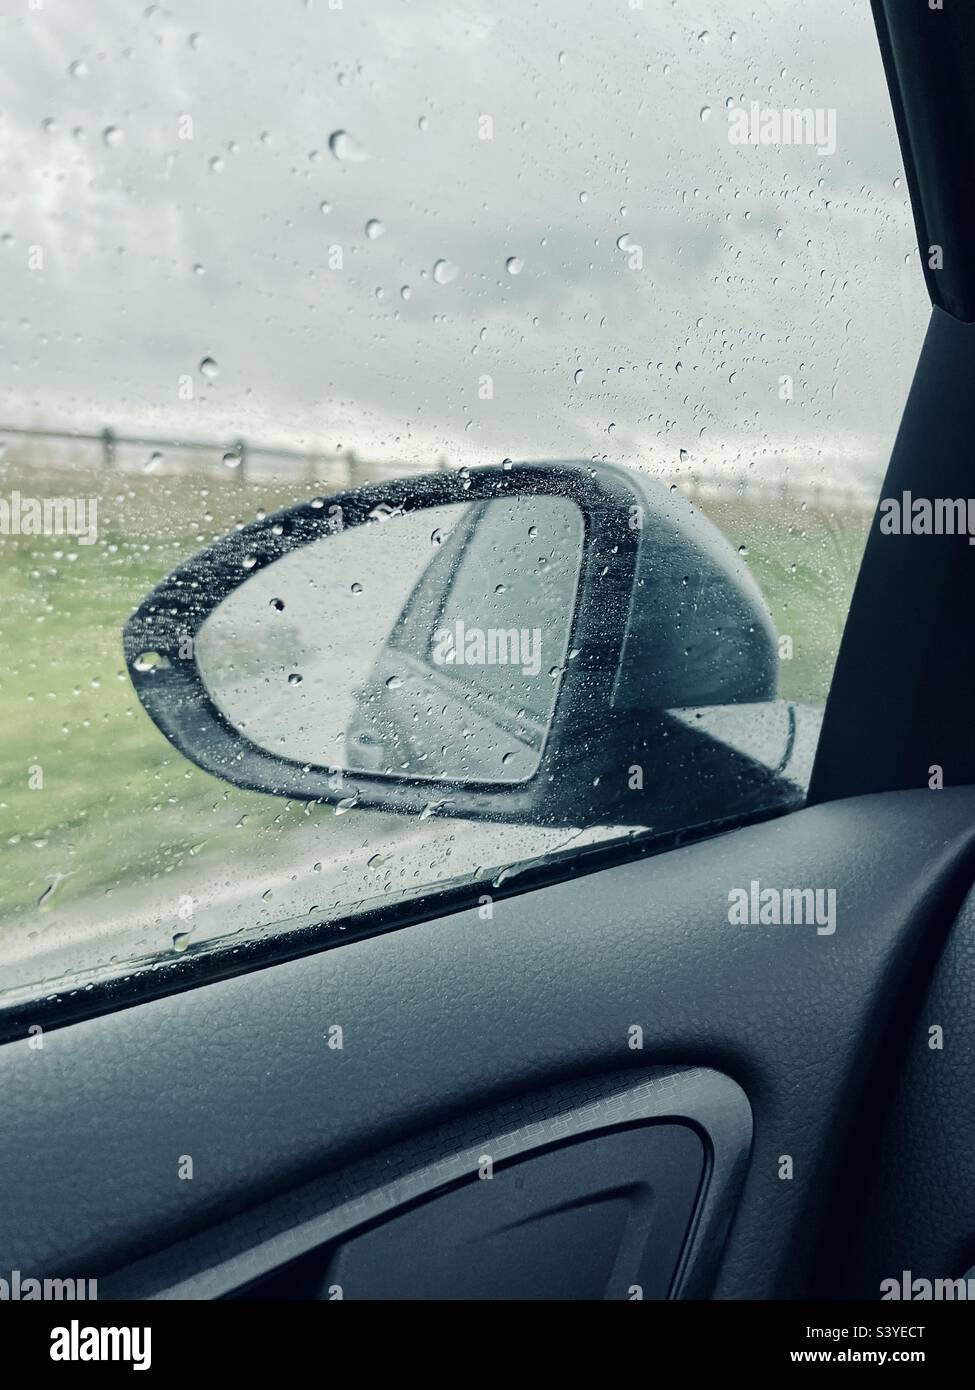 Nasse Auto Außenspiegel. Rückspiegel eines Autos durch die  Windschutzscheibe im Regen. Regen fällt auf das Auto Glas Fenster  Stockfotografie - Alamy